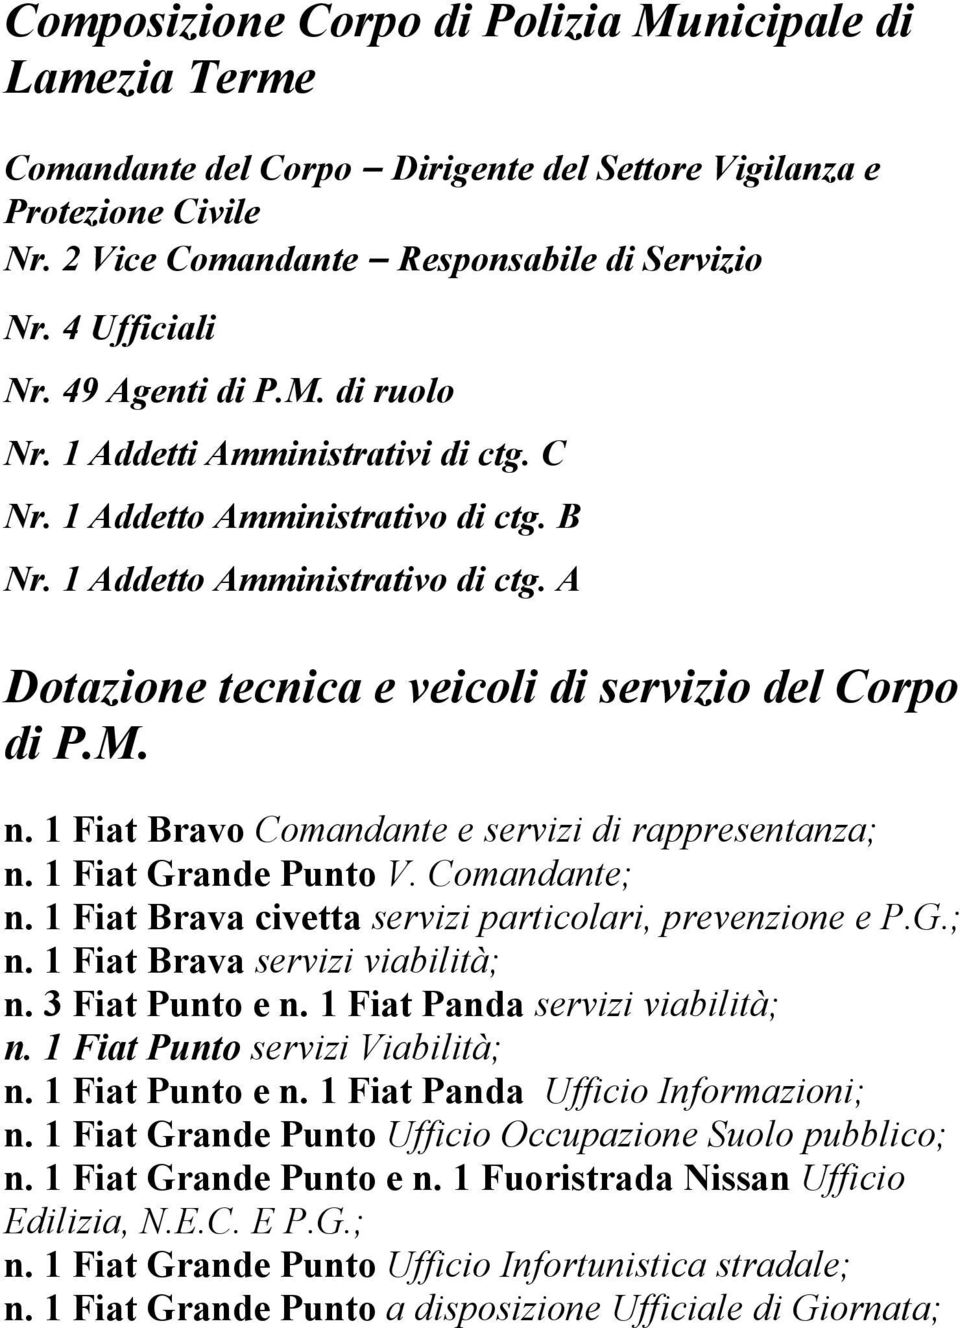 M. n. 1 Fiat Bravo Comandante e servizi di rappresentanza; n. 1 Fiat Grande Punto V. Comandante; n. 1 Fiat Brava civetta servizi particolari, prevenzione e P.G.; n. 1 Fiat Brava servizi viabilità; n.